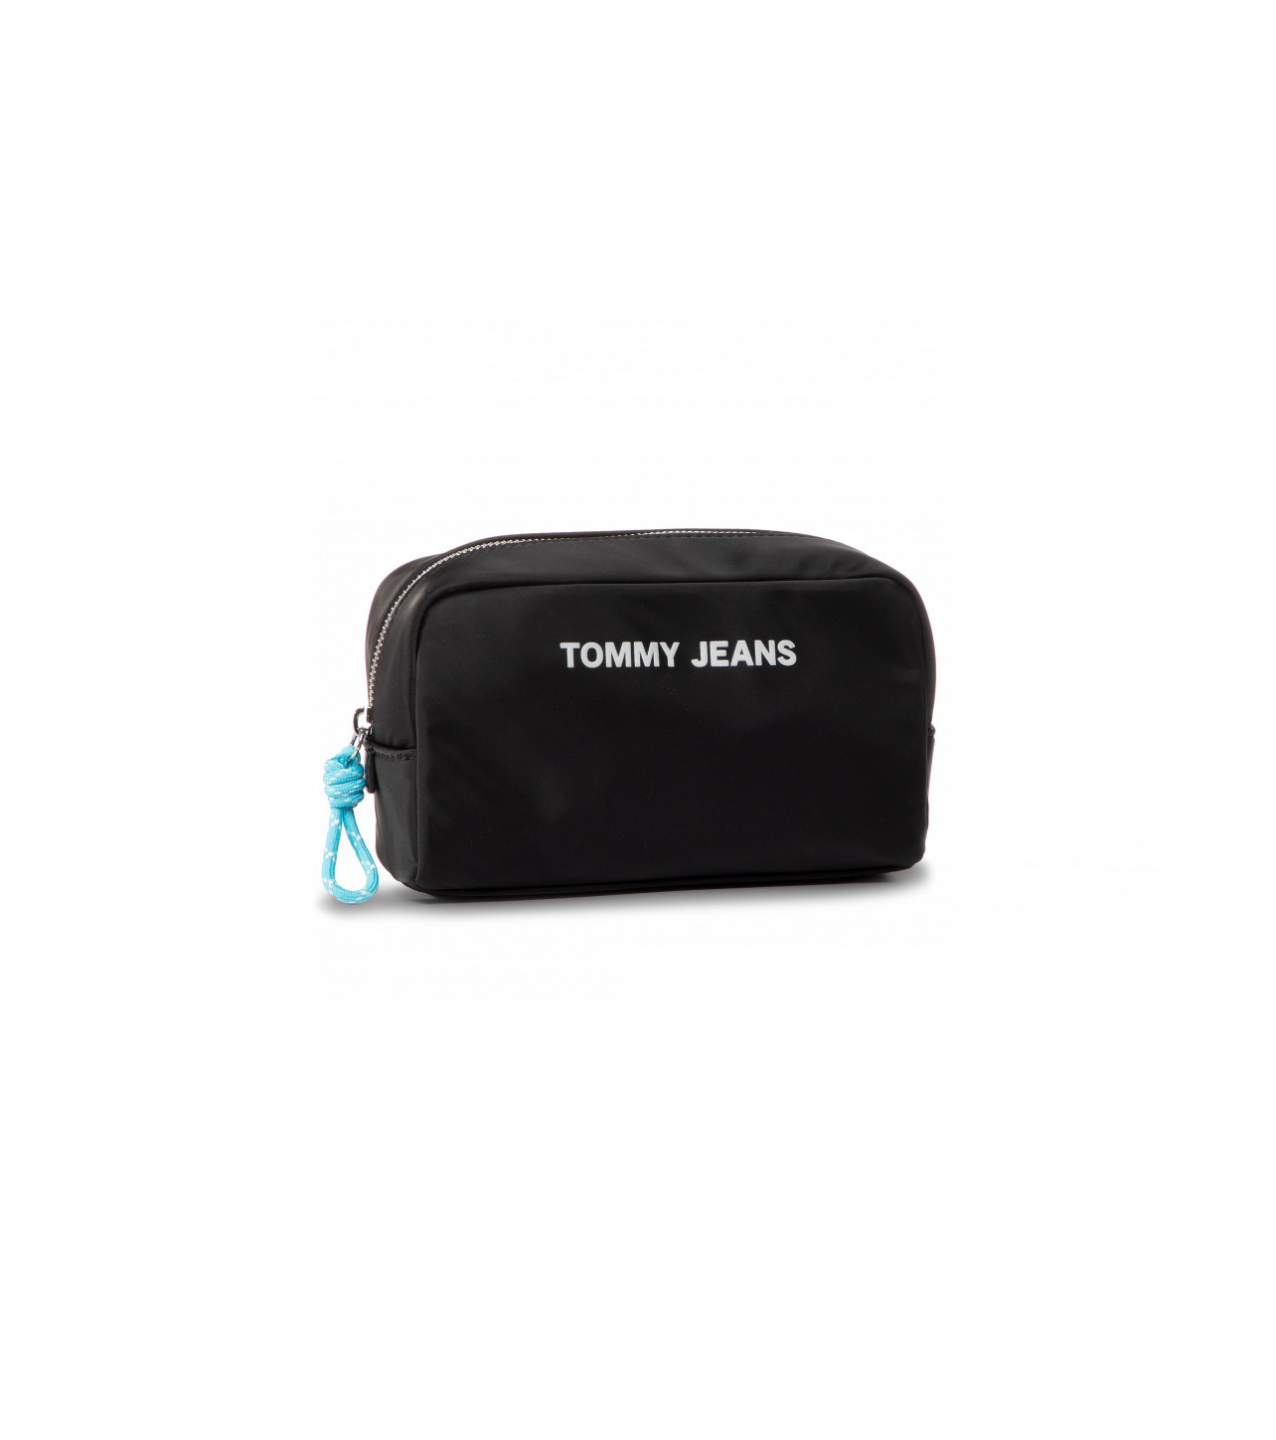 Tommy Hilfiger Tommy Jeans dámská černá kosmetická taška NAUTICAL MIX WASHBAG